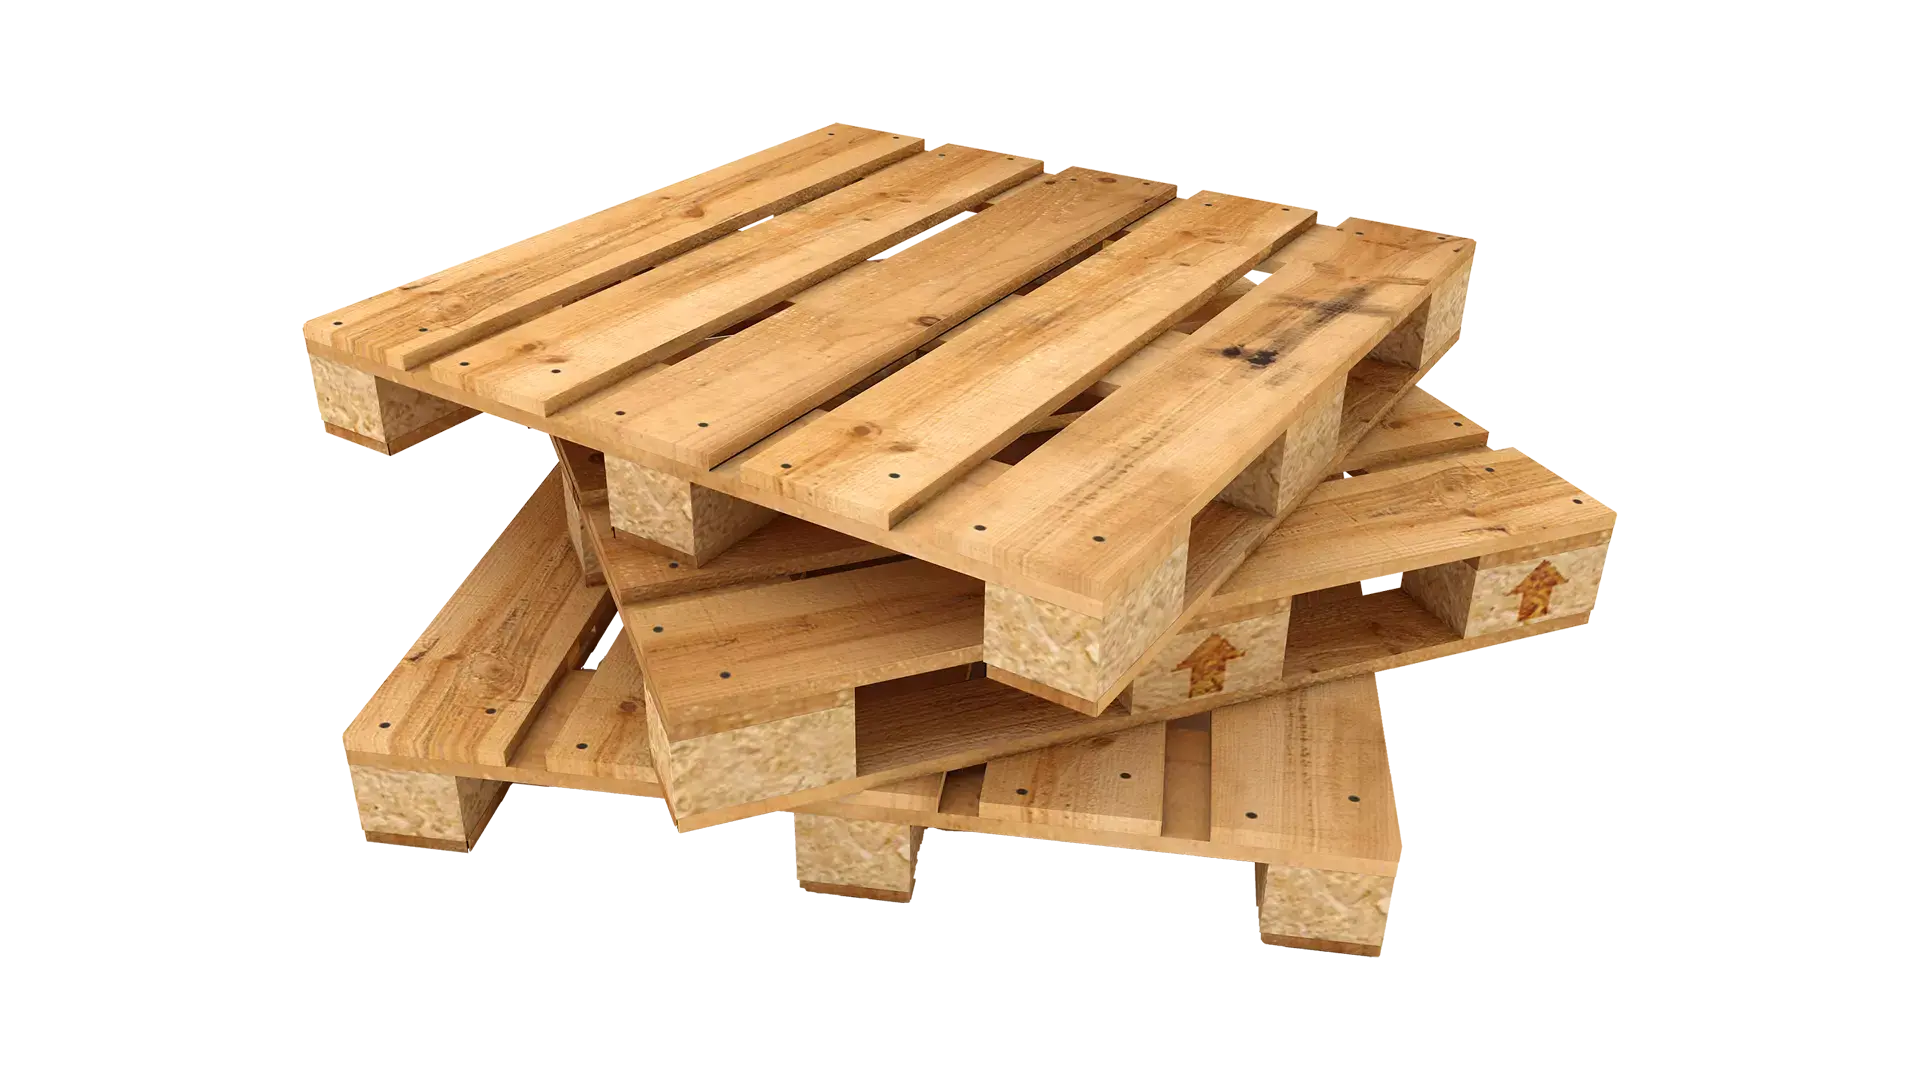 Pila de palés de madera